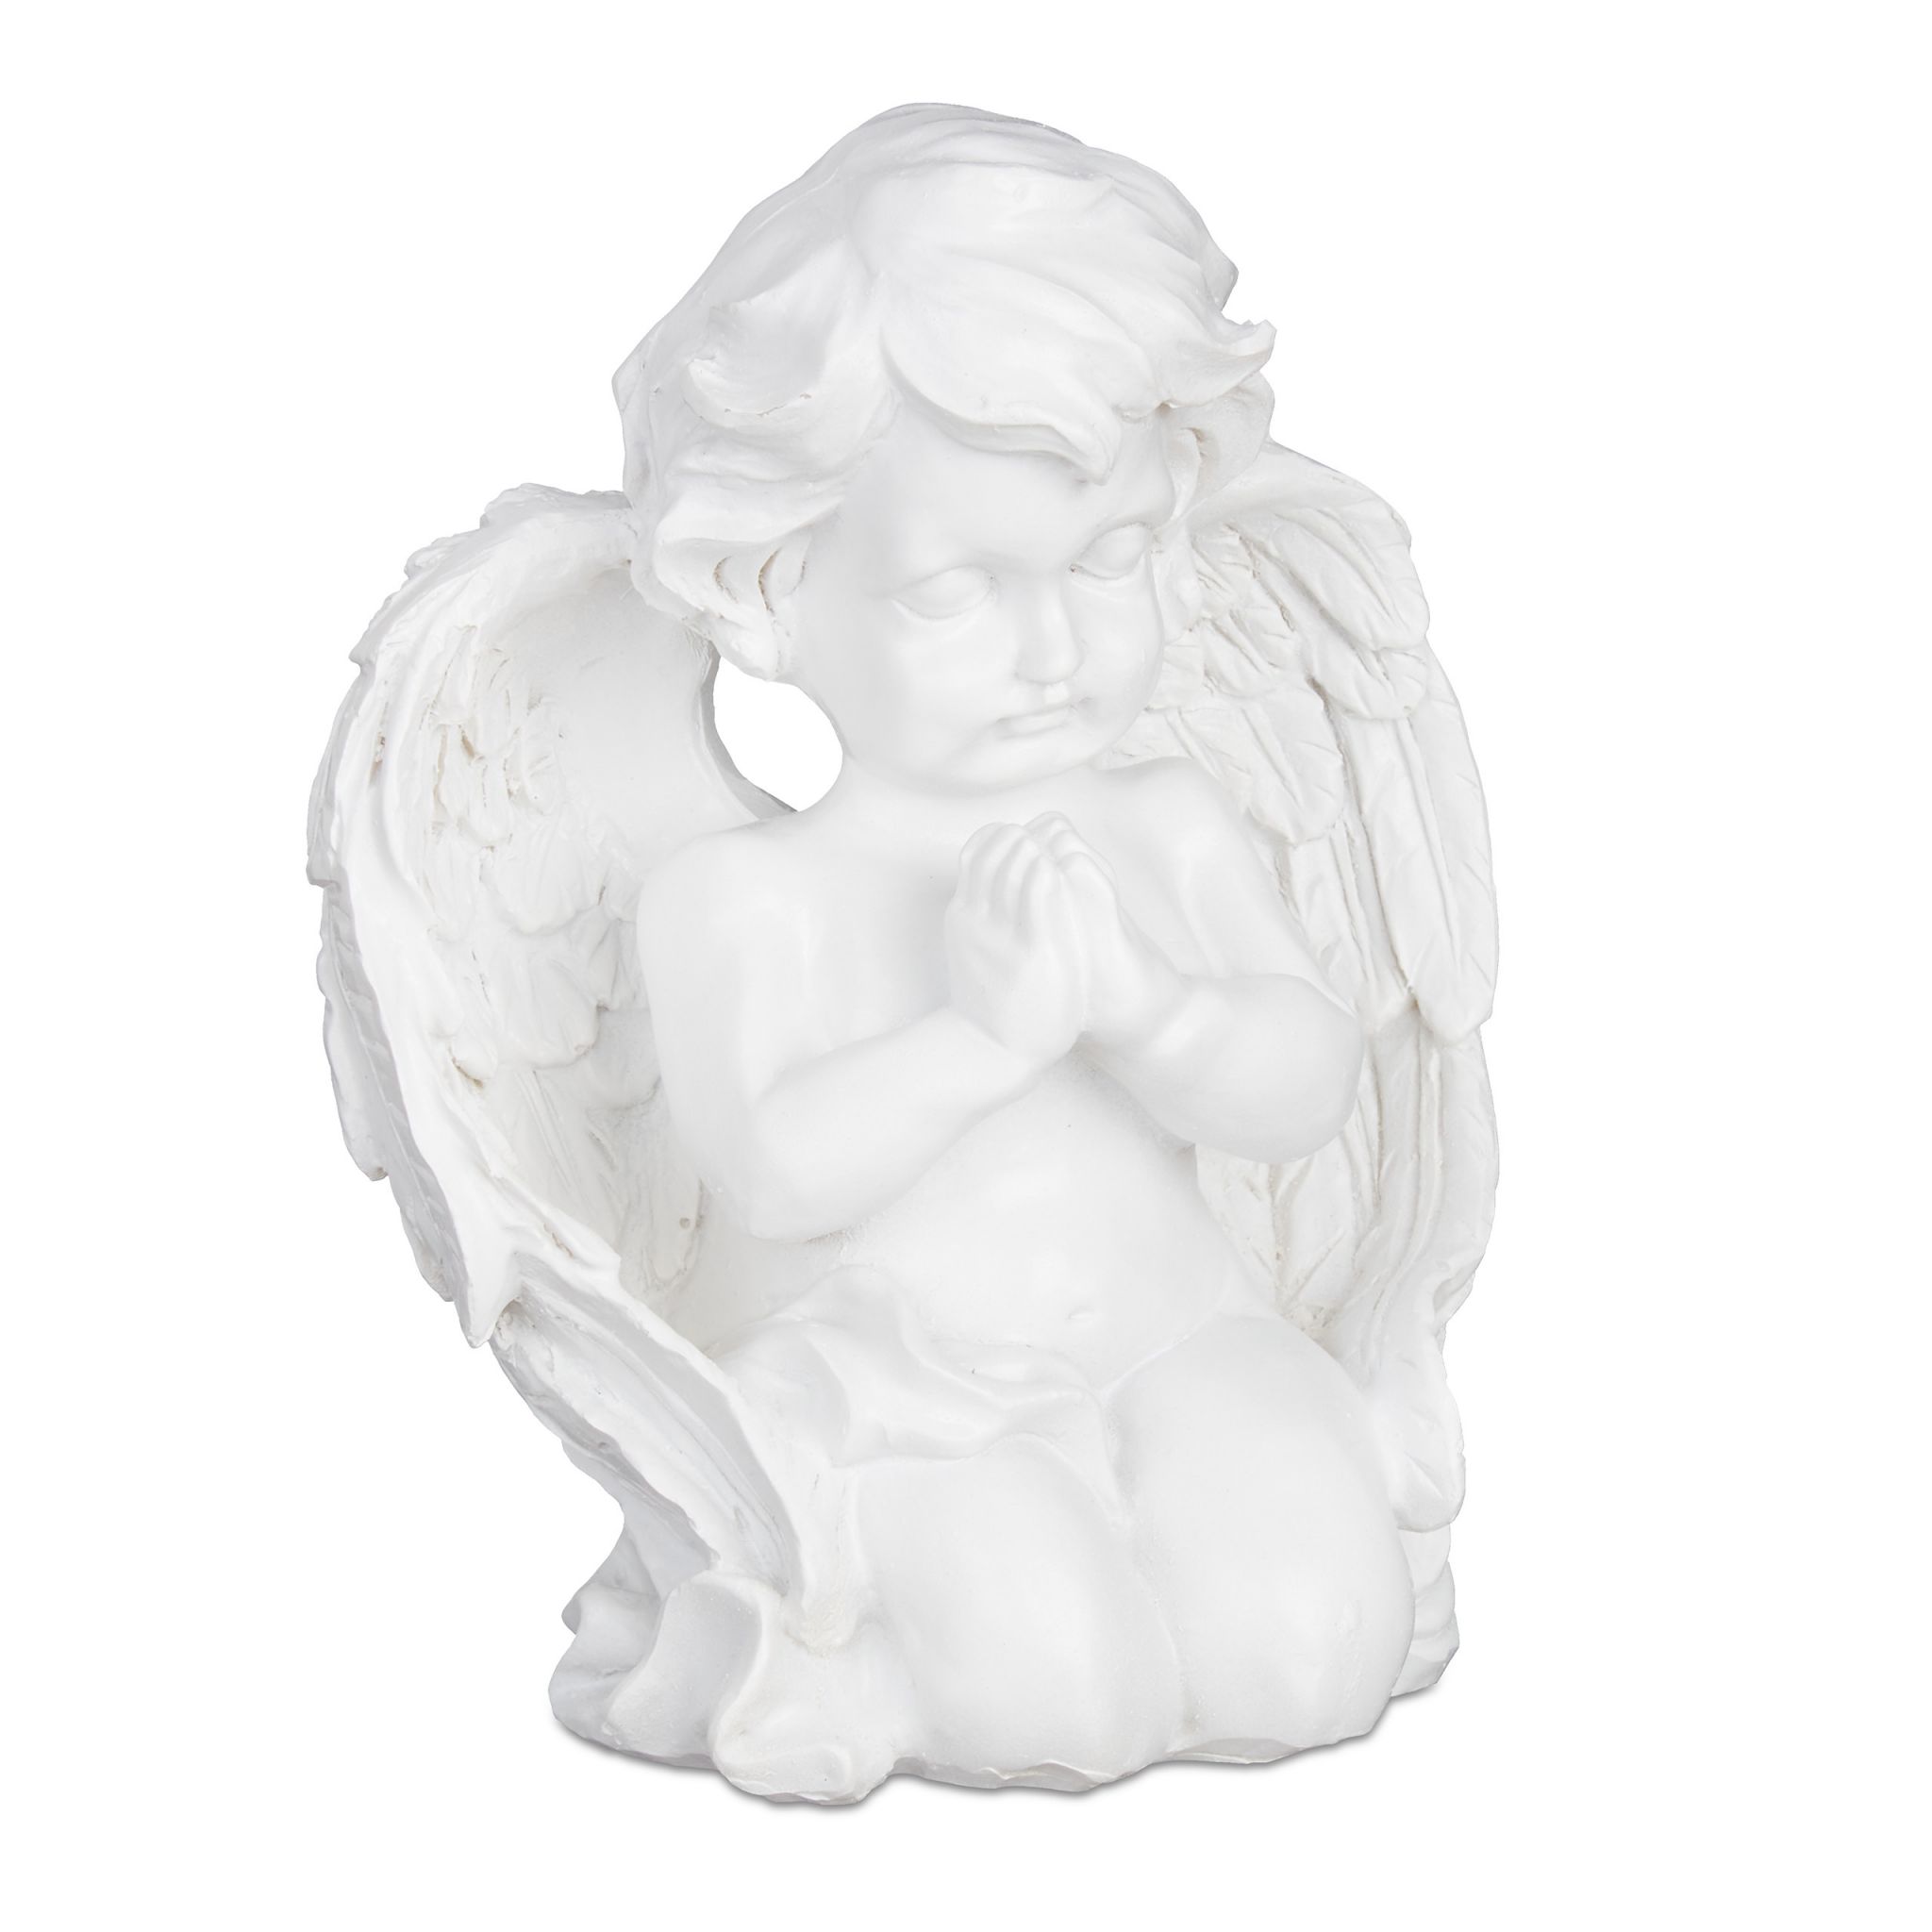 Náhrobná socha modliaceho sa anjelika RD30897, biela 